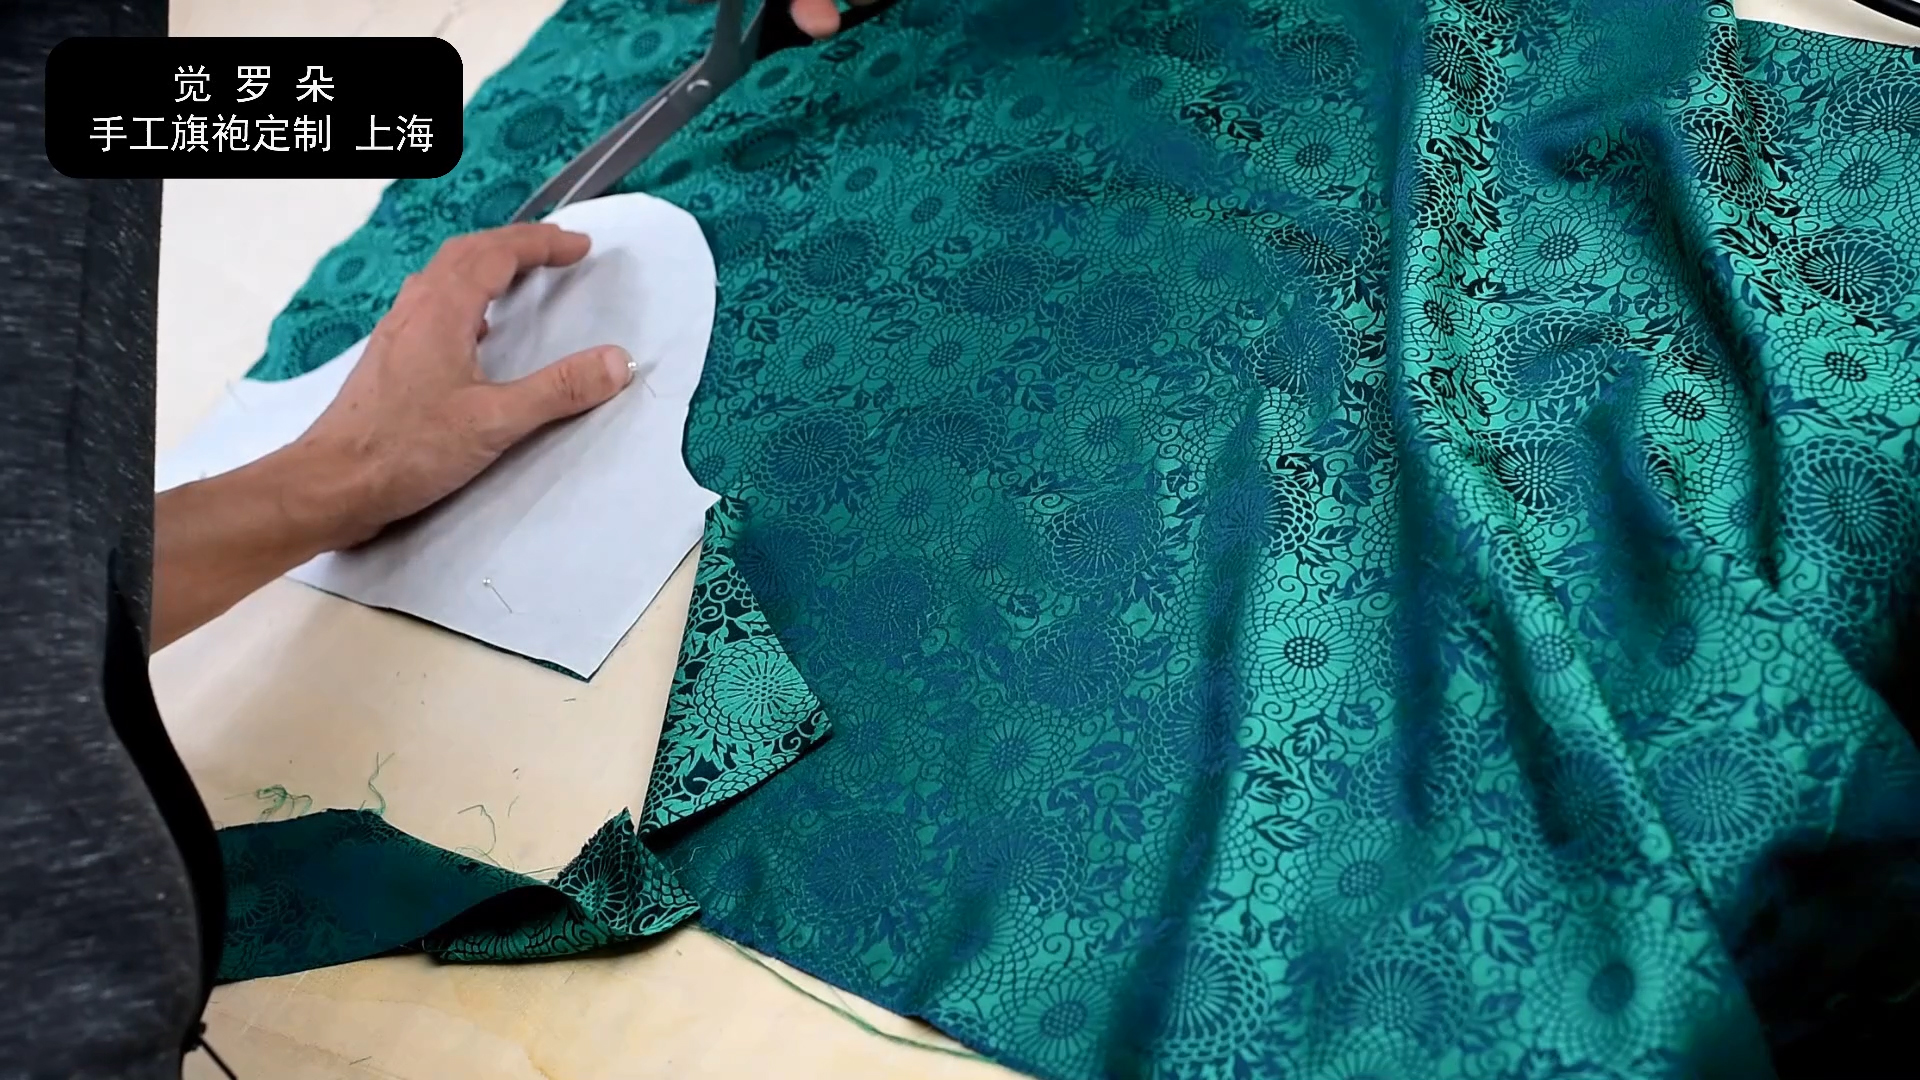 古法旗袍裁剪图解与制作方法66觉罗朵学做手工旗袍视频教程单开襟裁剪